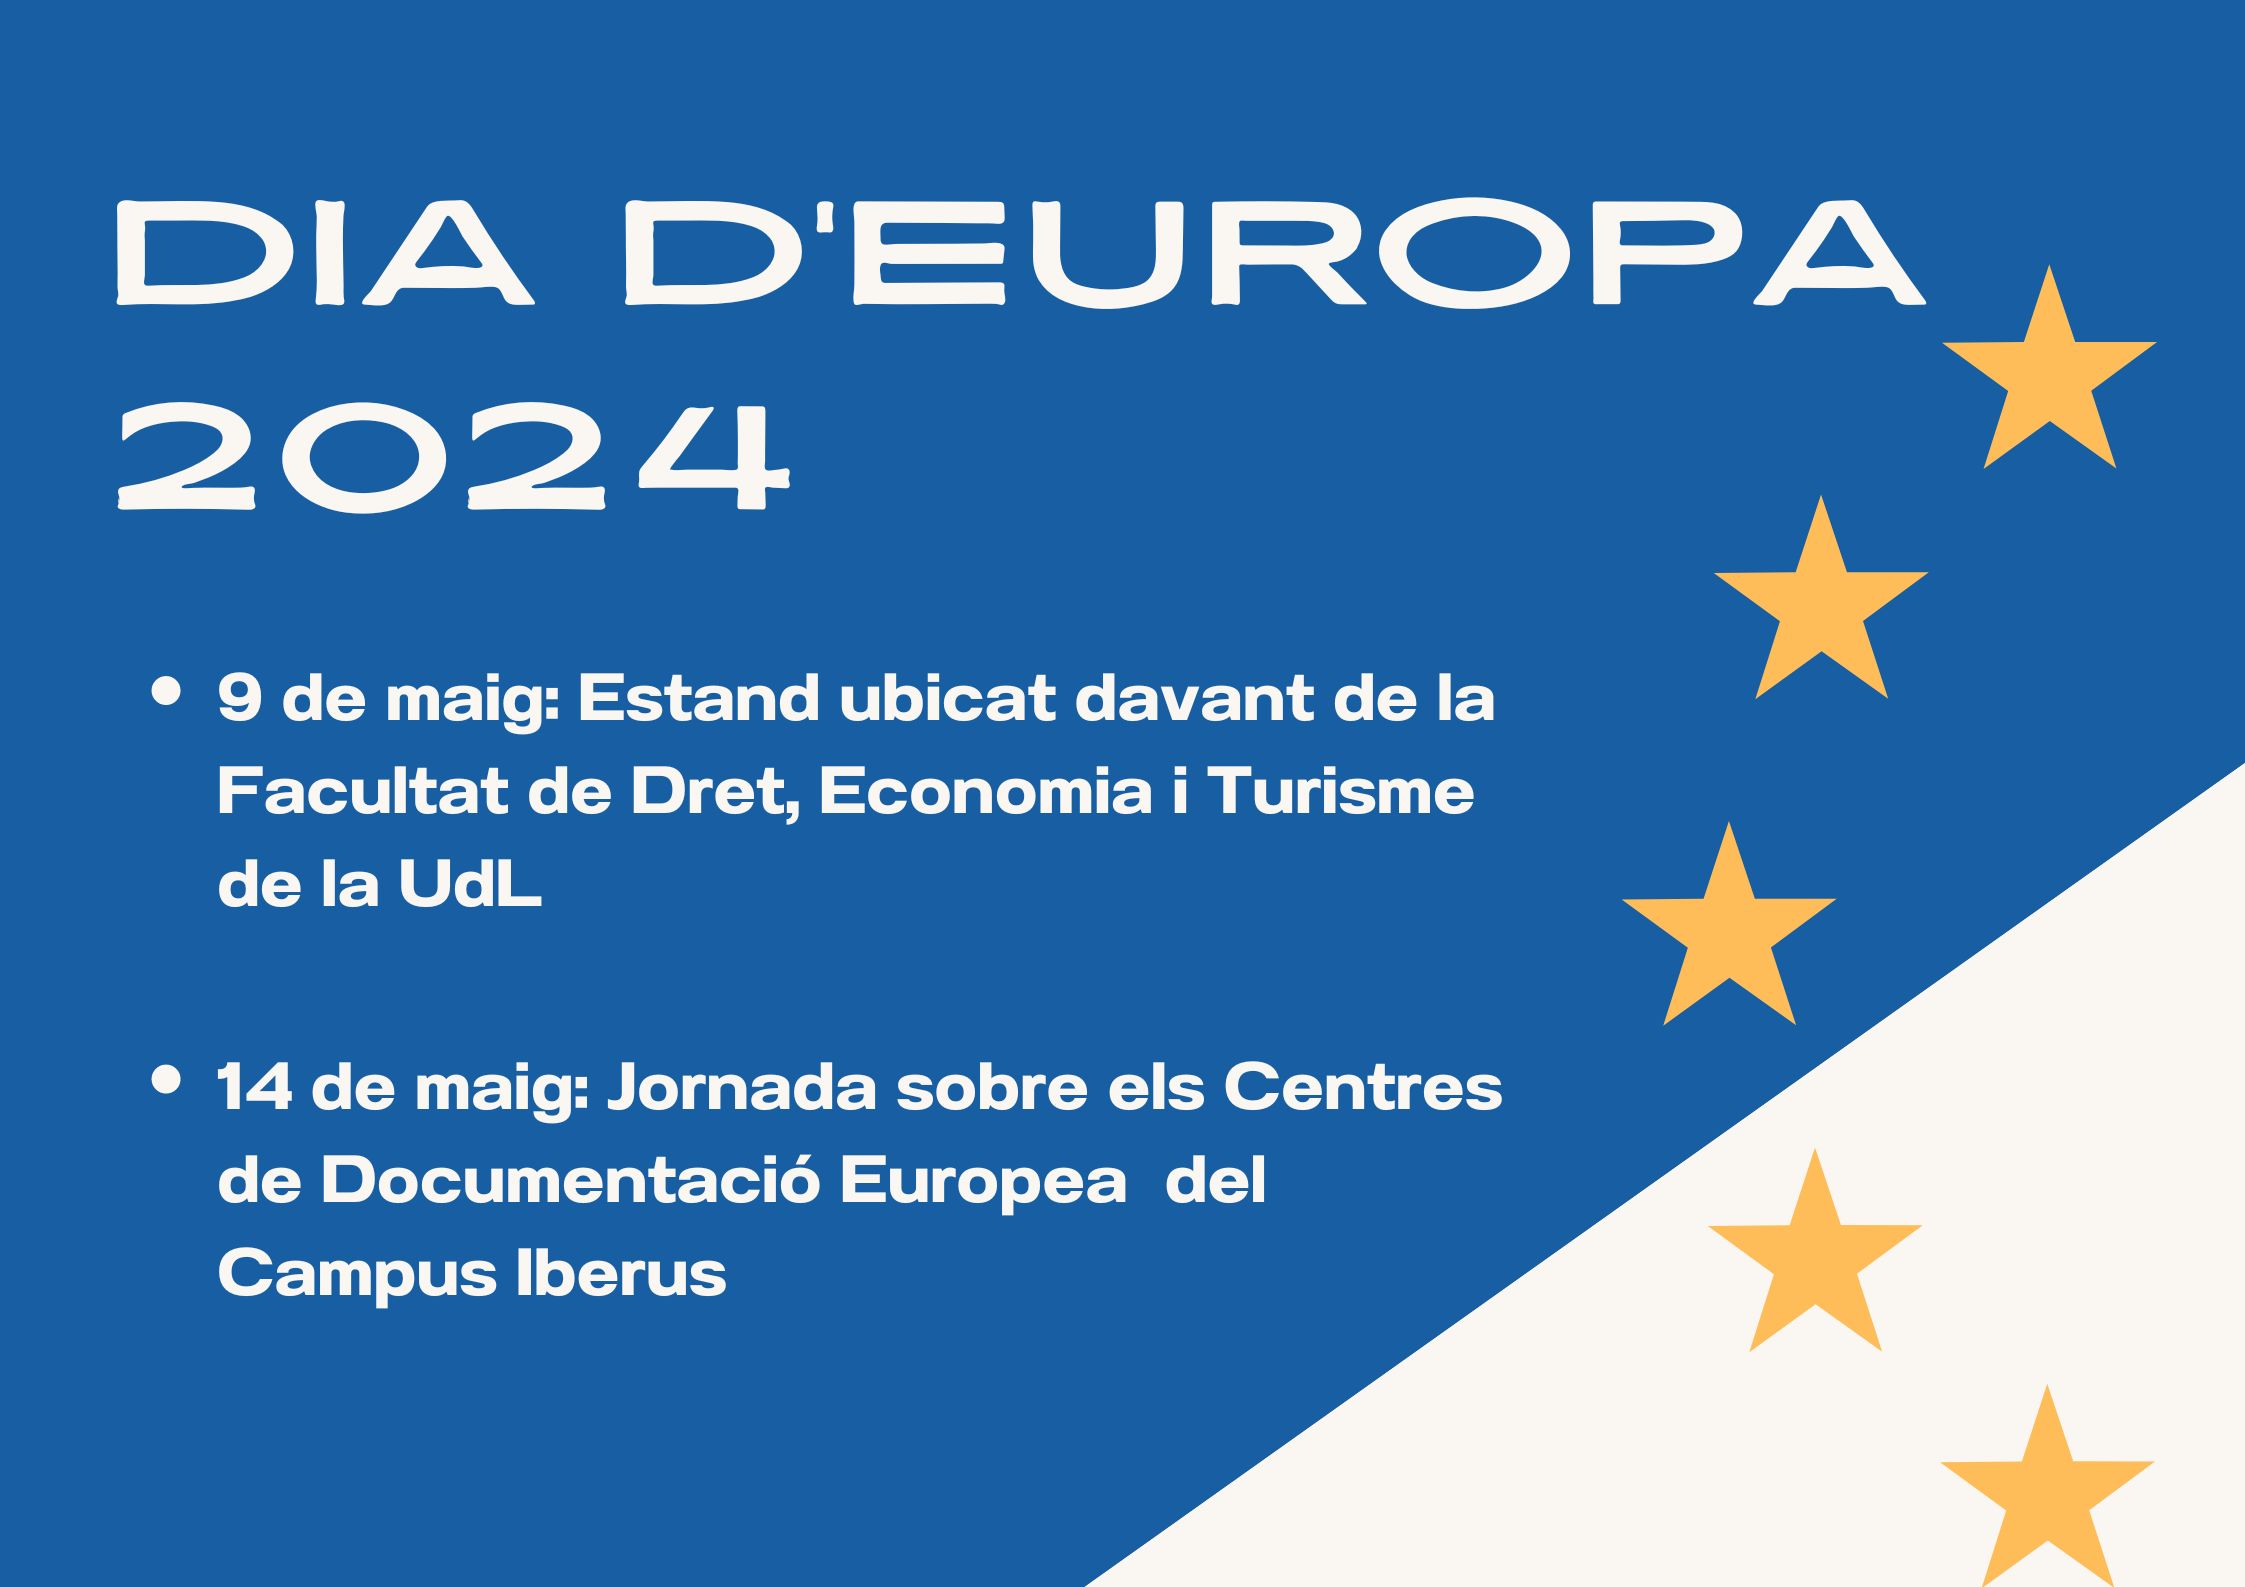 DiaEuropa2